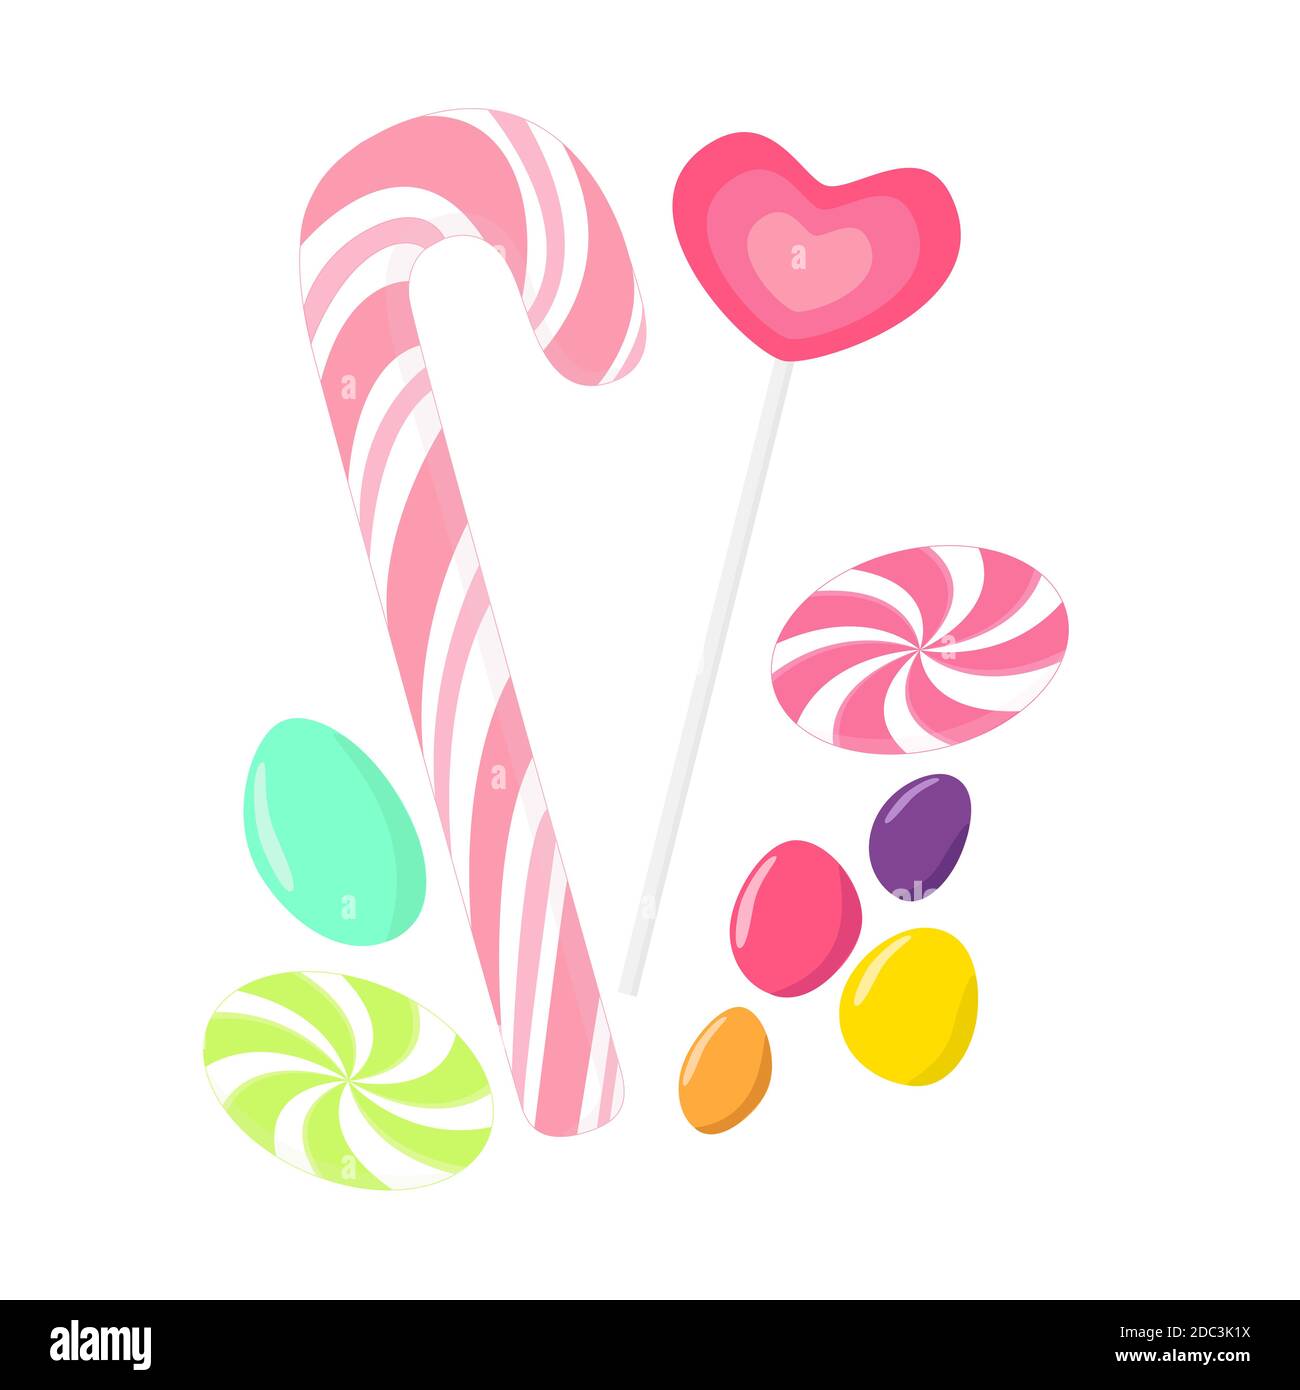 Collection de bonbons avec bonbons en forme de coeur, bonbon, canne à sucre, caramel et chocolat de couleur cailloux, isolés sur fond blanc Illustration de Vecteur